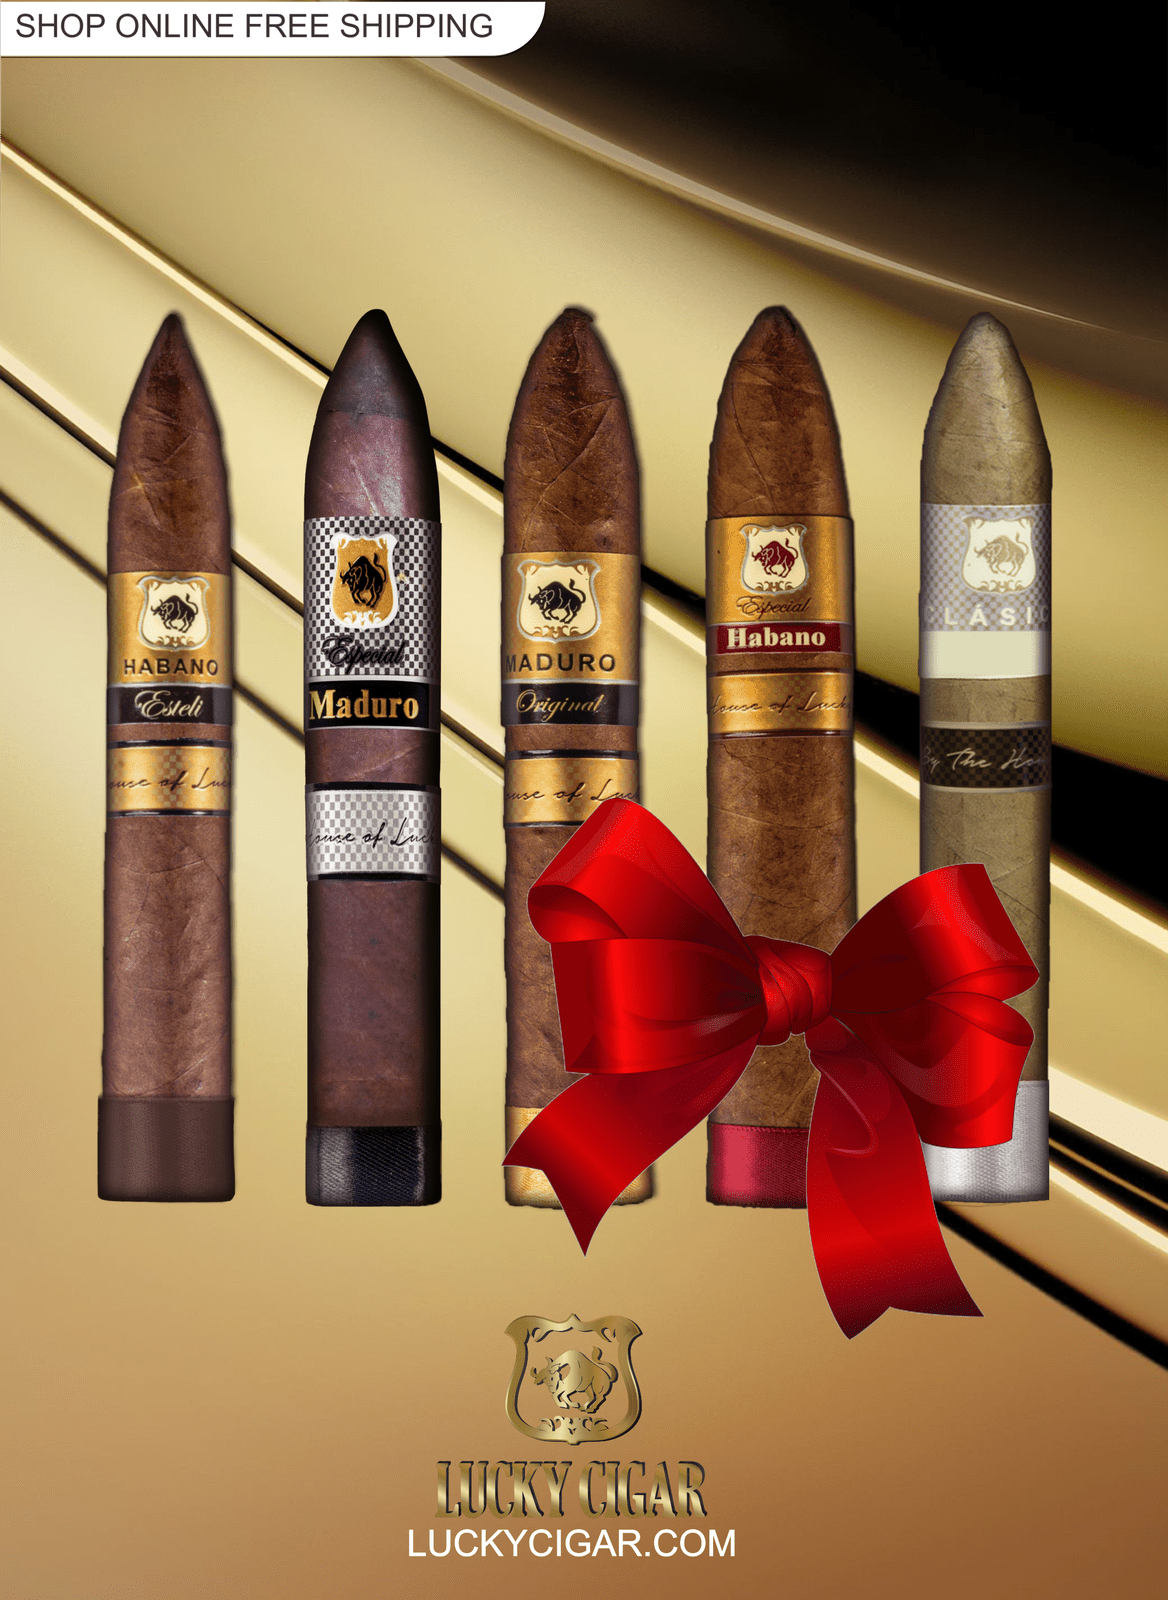 Lucky Cigar Sampler Sets: Set of 5 Torpedo Cigars, Habano Esteli, Maduro Especial,  Maduro Original, Especial Habano, Classico